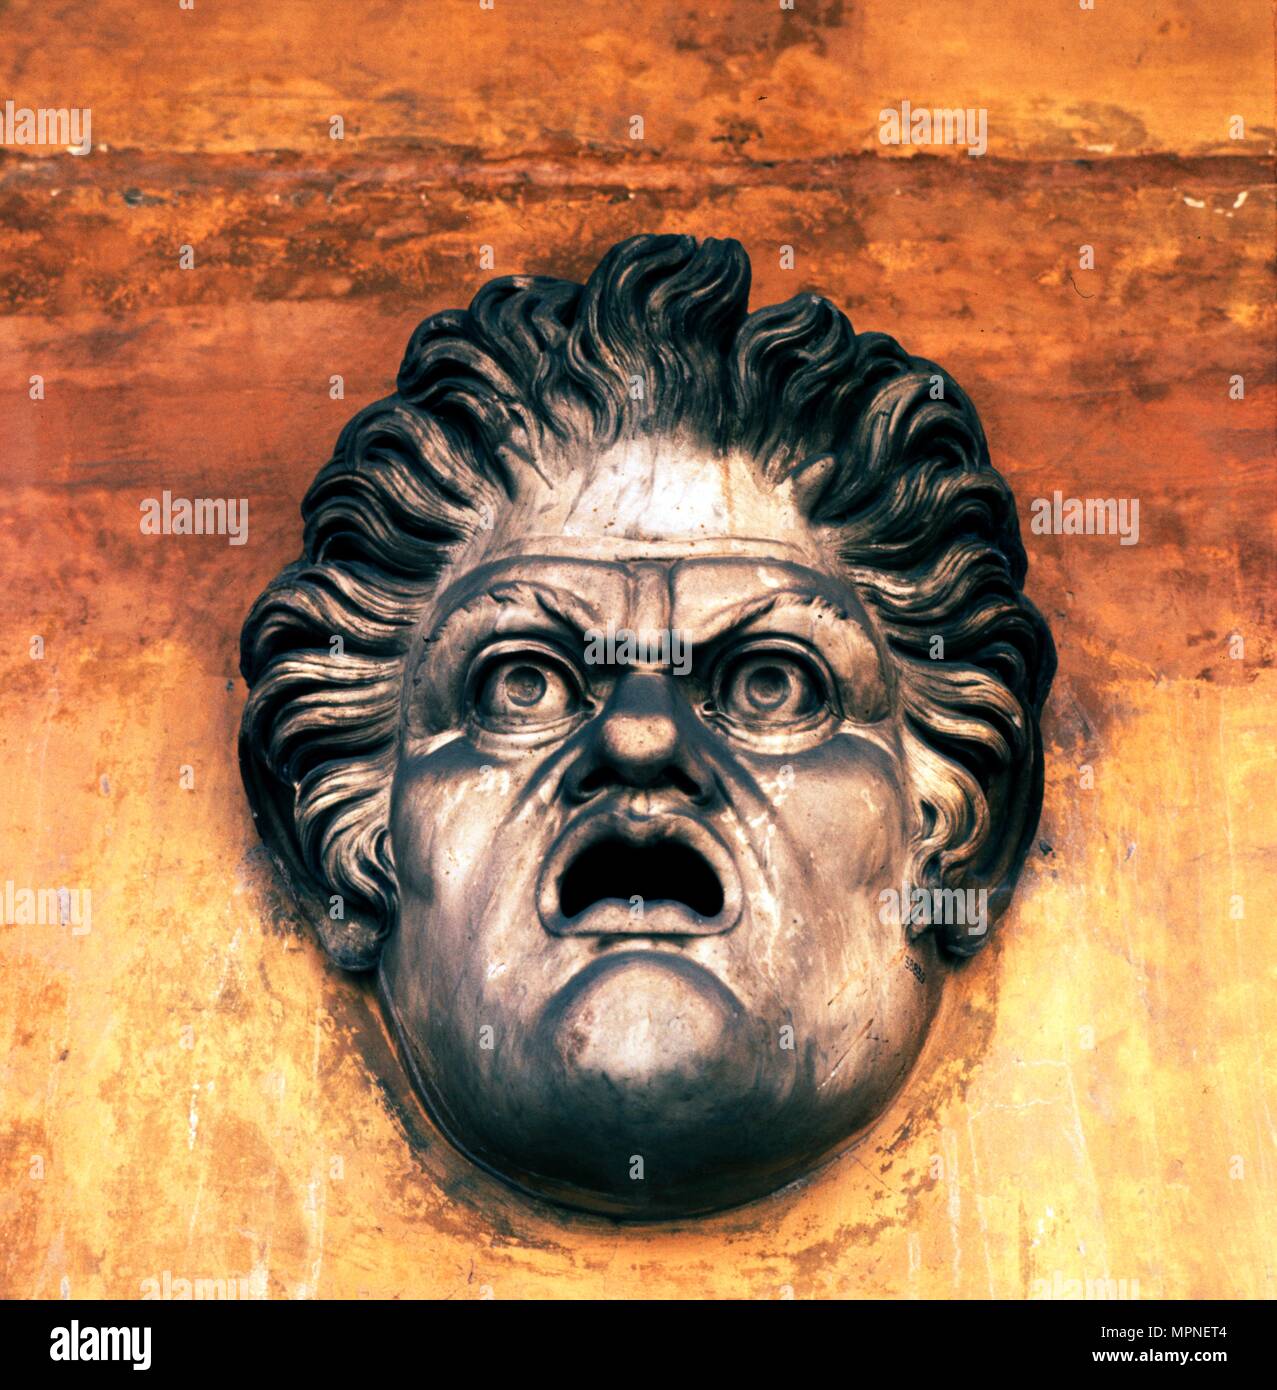 Masque de théâtre romain des thermes de Dioclétien, c 3 siècle. Artiste : Inconnu. Banque D'Images